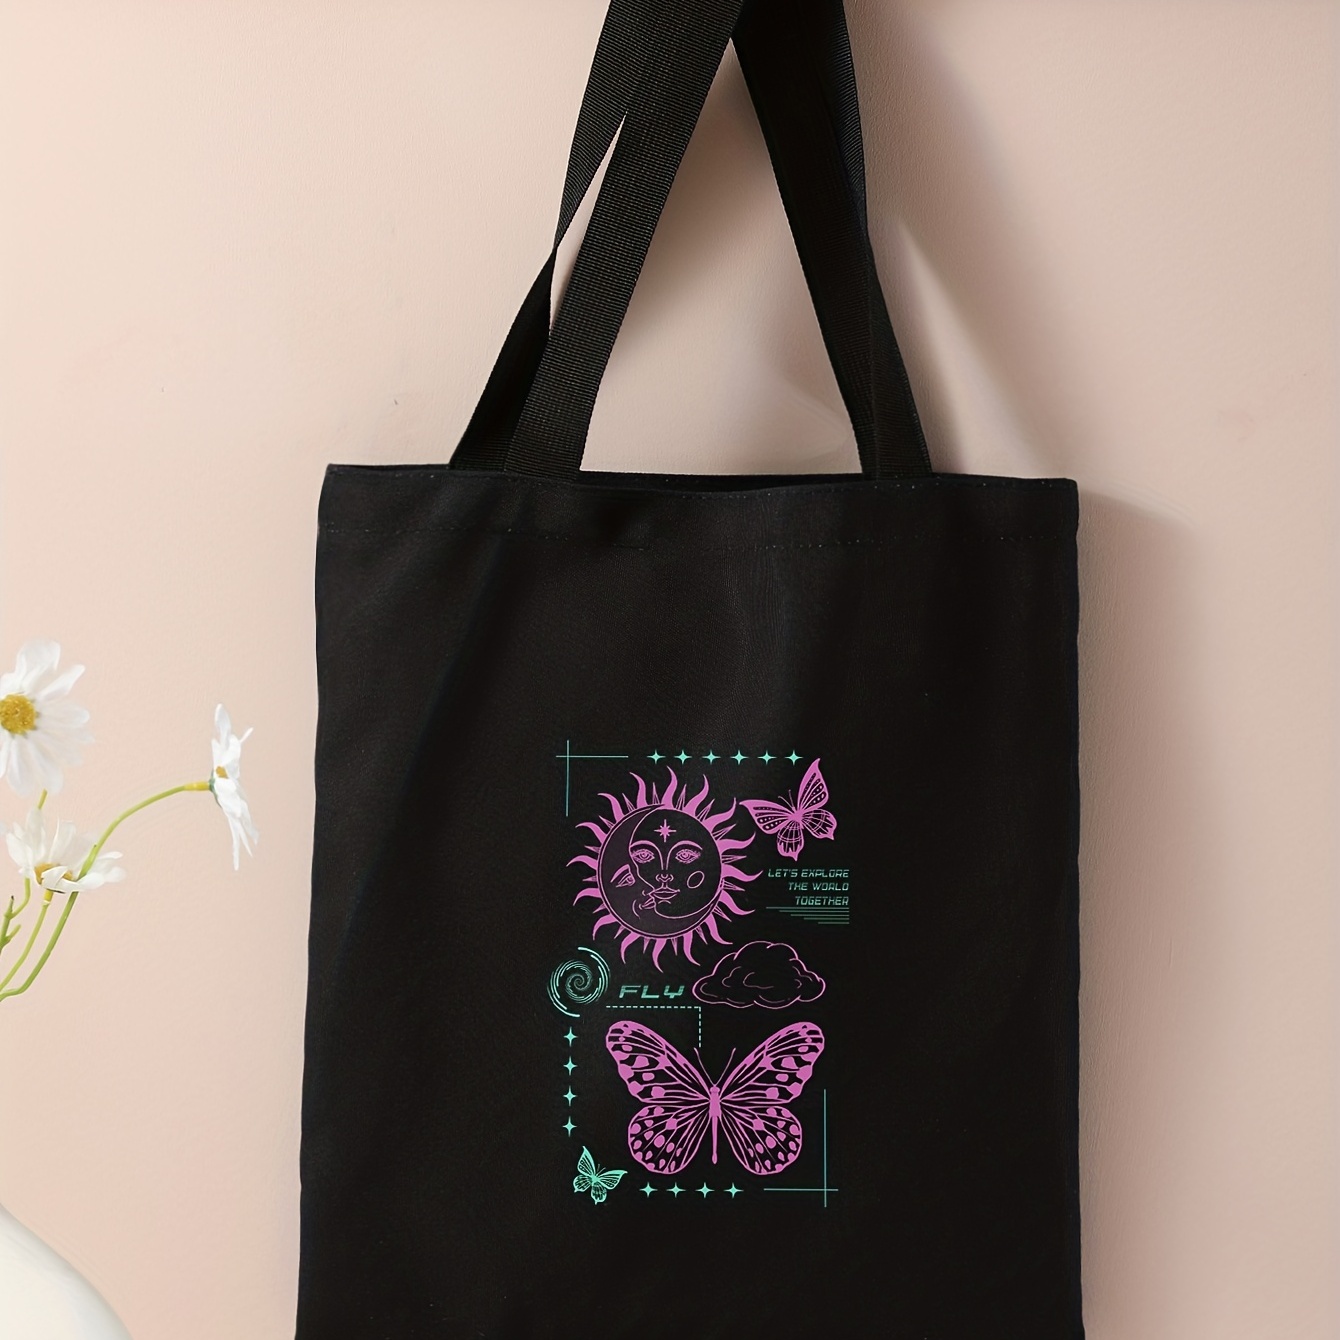 Cute Cat Print Canvas Tote Bag, Large Capacity Shoulder Bag, Women's  Reusable Handbag & Grocery Shopping Bag - Temu